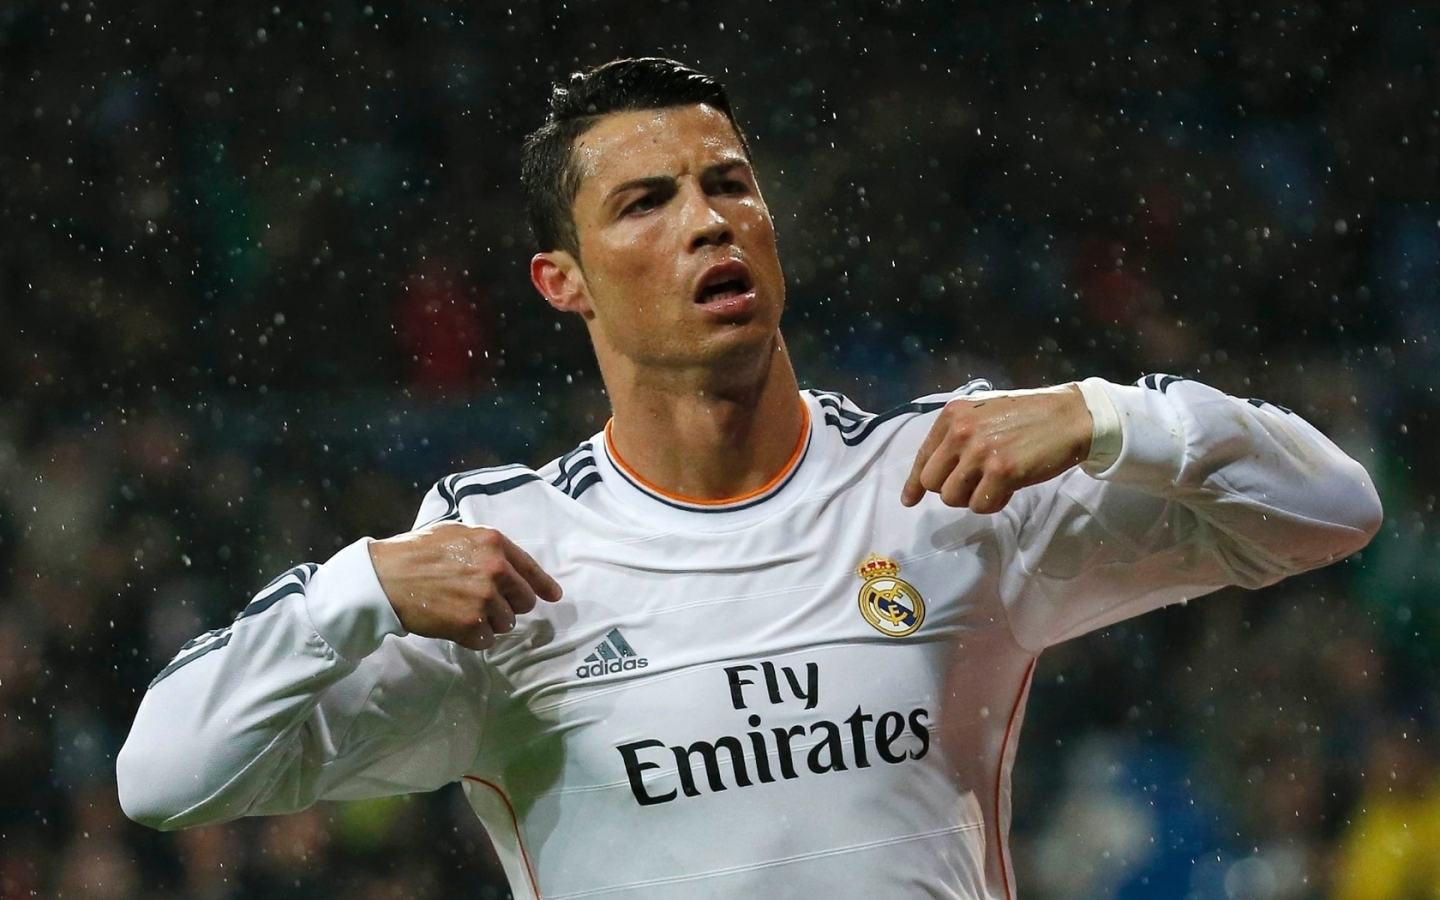 Cristiano Ronaldo in Rain for 1440 x 900 widescreen resolution